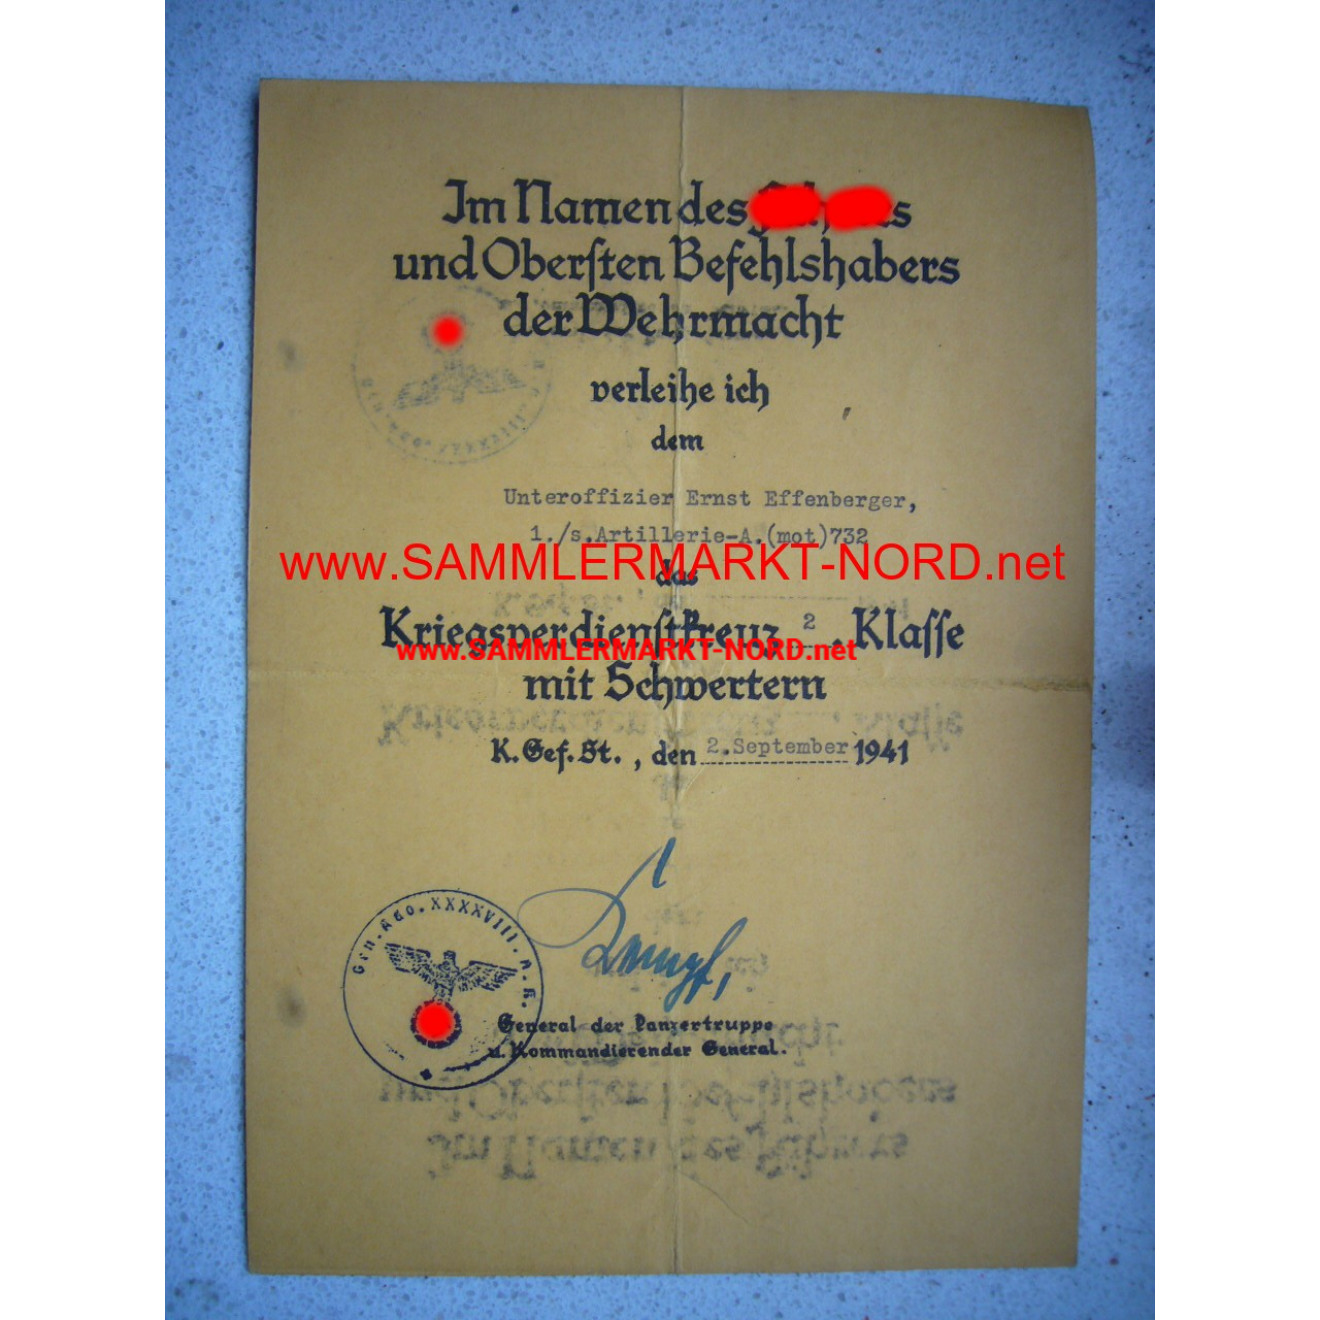 KVK Urkunde (Orange!) - General WERNER KEMPF - Autograph